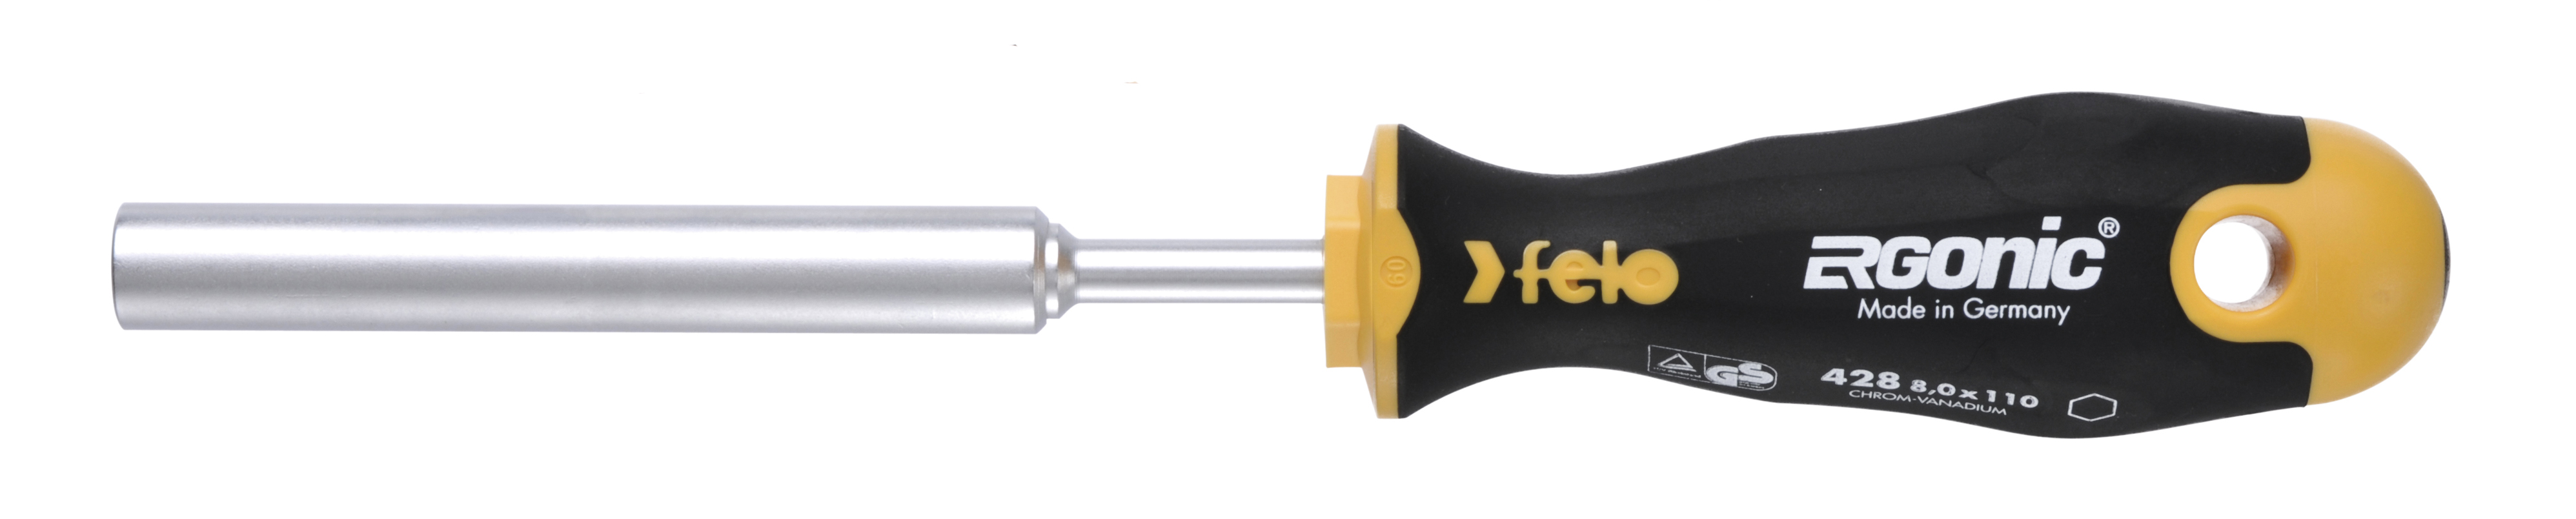 Отвертка Felo Ergonic M-TEC 42806030 торцевой ключ 6,0X110 диэлектрический ключ отвёртка izeltas 4773190110 1000v торцевой 11мм длина 230 мм